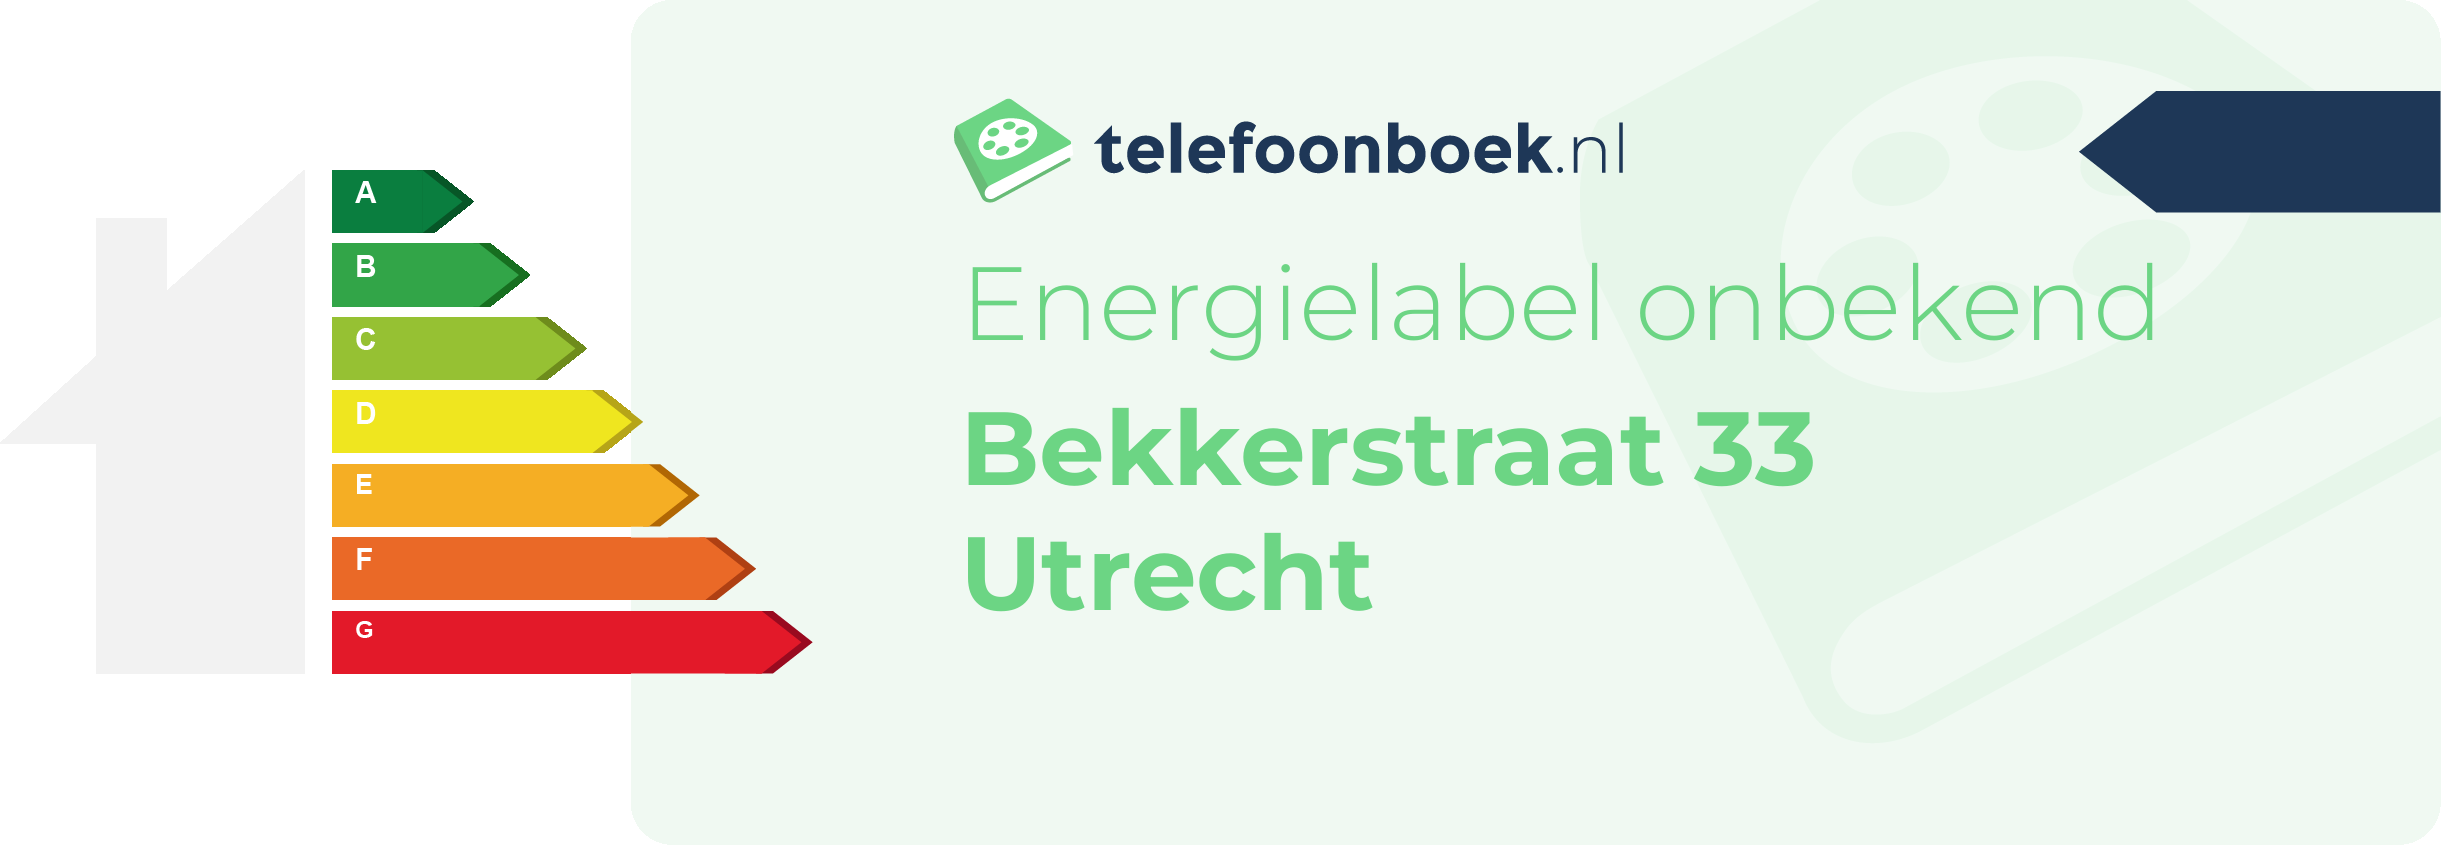 Energielabel Bekkerstraat 33 Utrecht